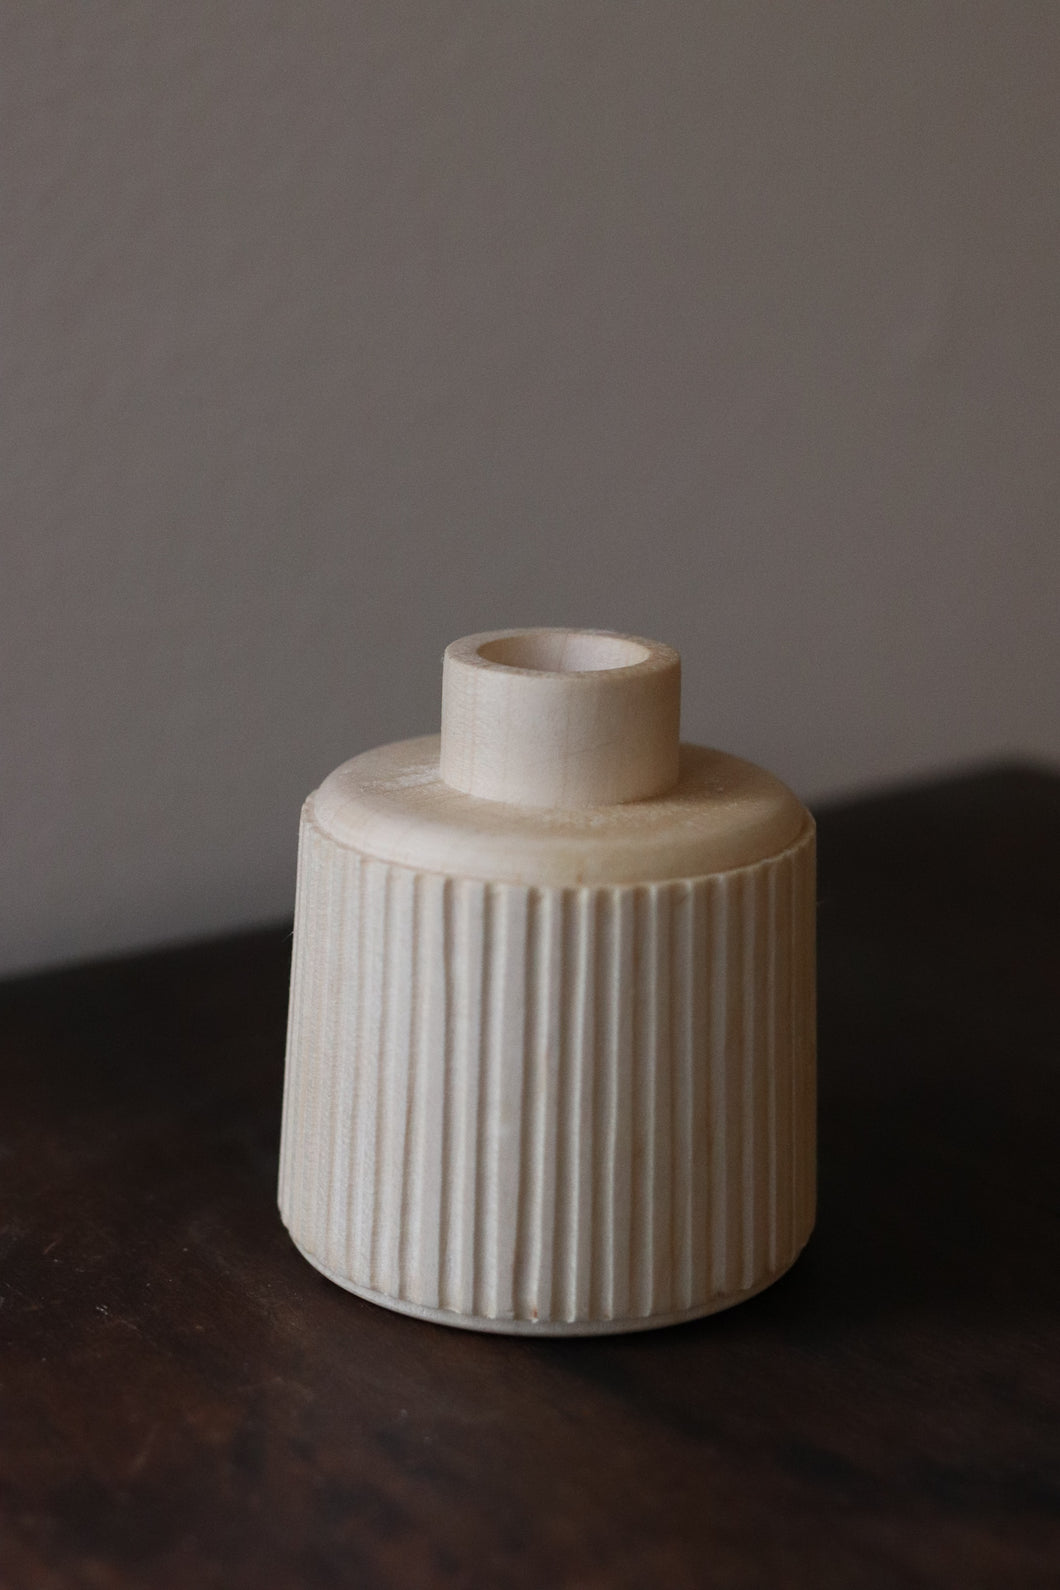 Hand-turned Miniature Vases - Batch 1 - Vase 12